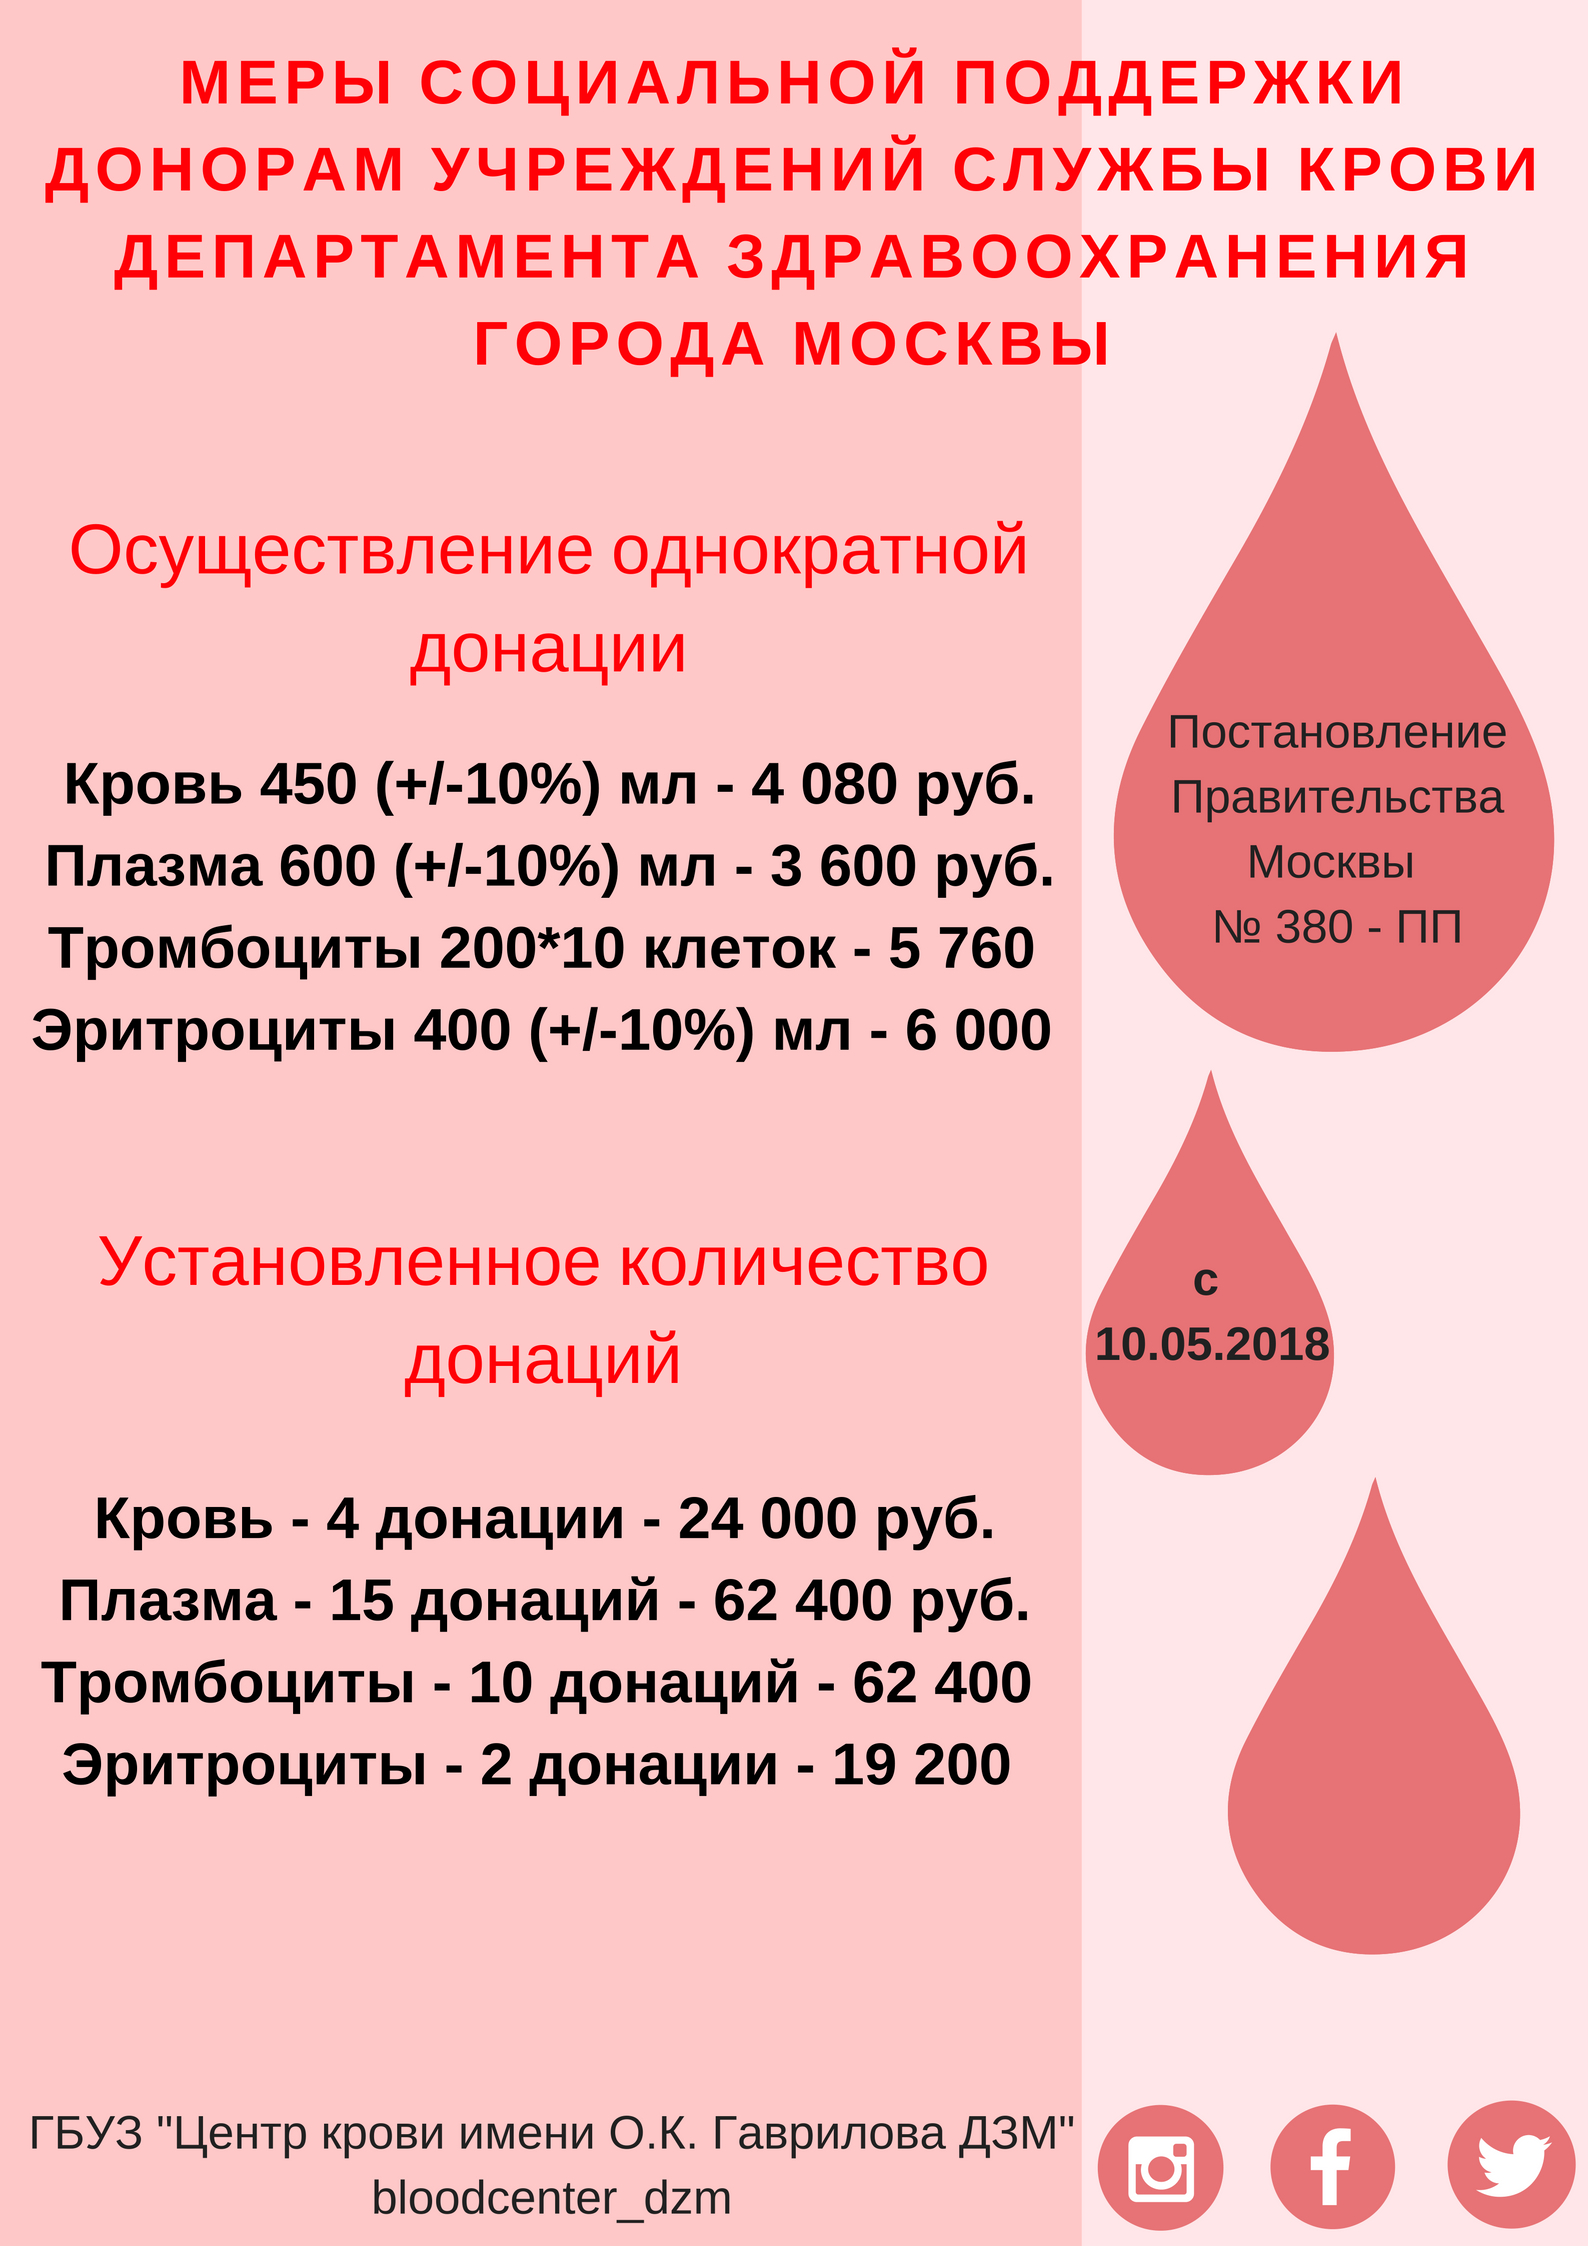 Оплата донорам крови. Вознаграждение за донорство крови. Плата донорам за сдачу крови. Сколько платят за сдачу крови в Москве. Почётный донор Москвы льготы.